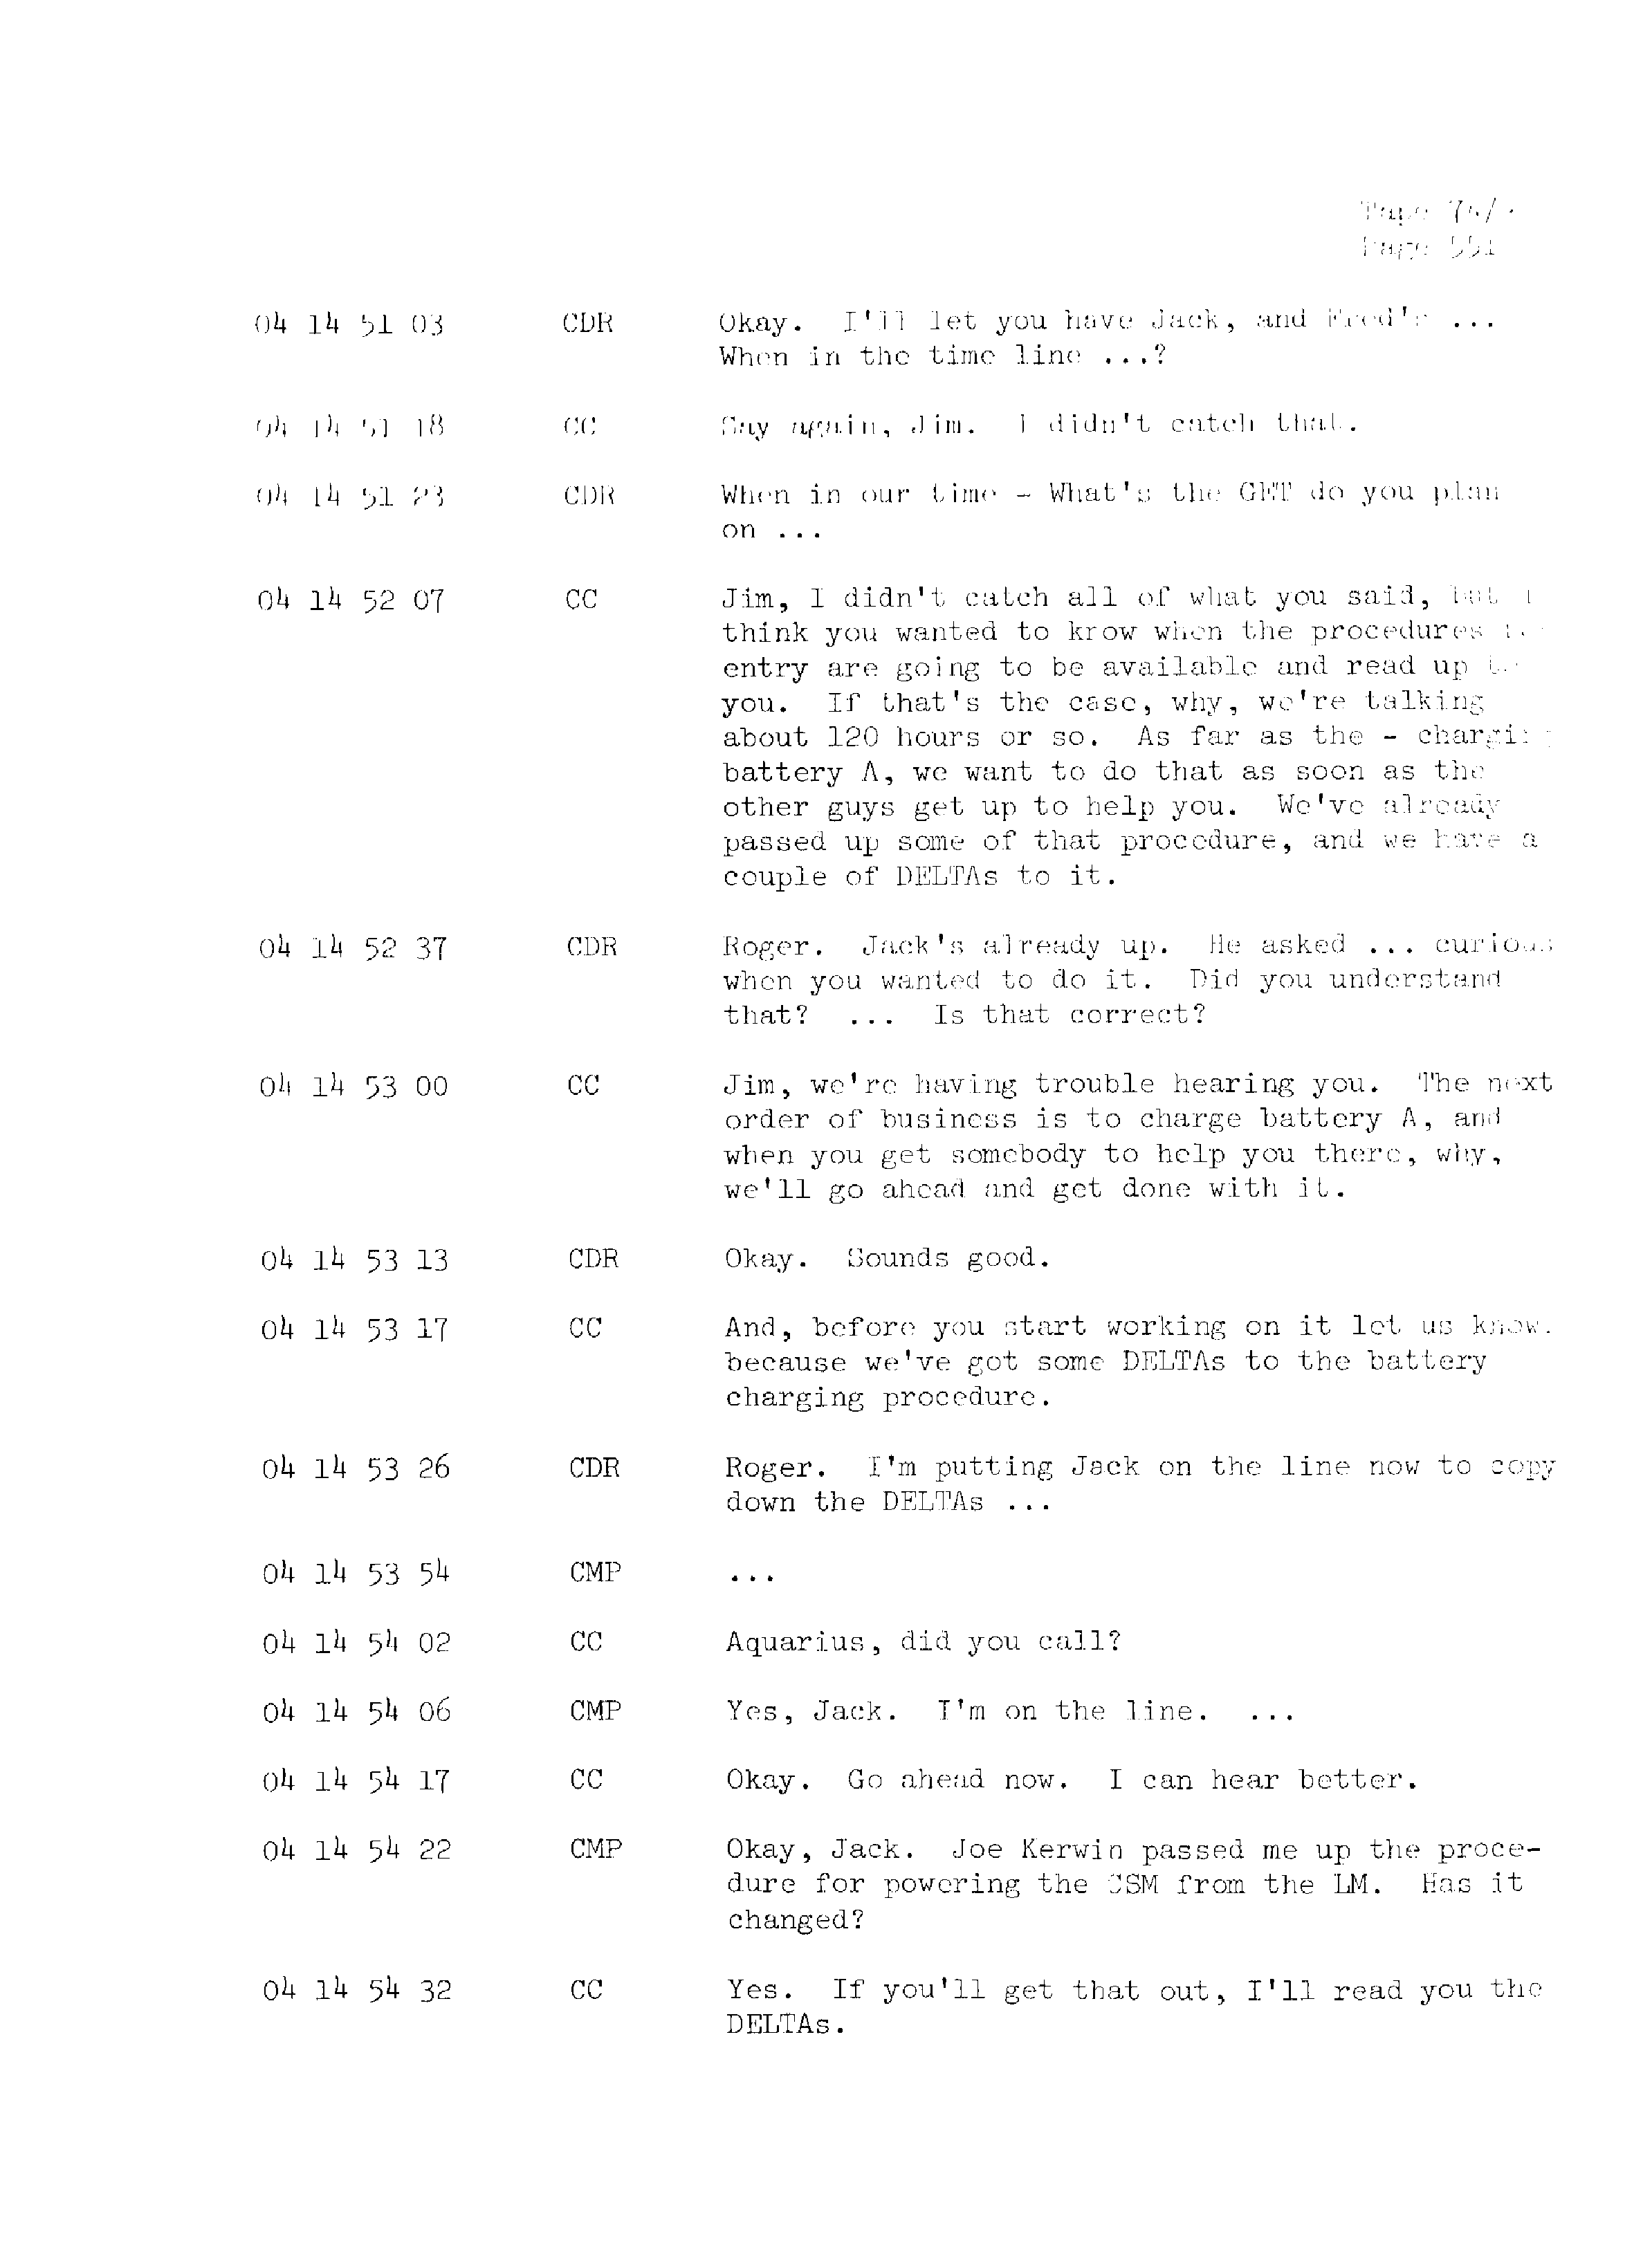 Page 558 of Apollo 13’s original transcript